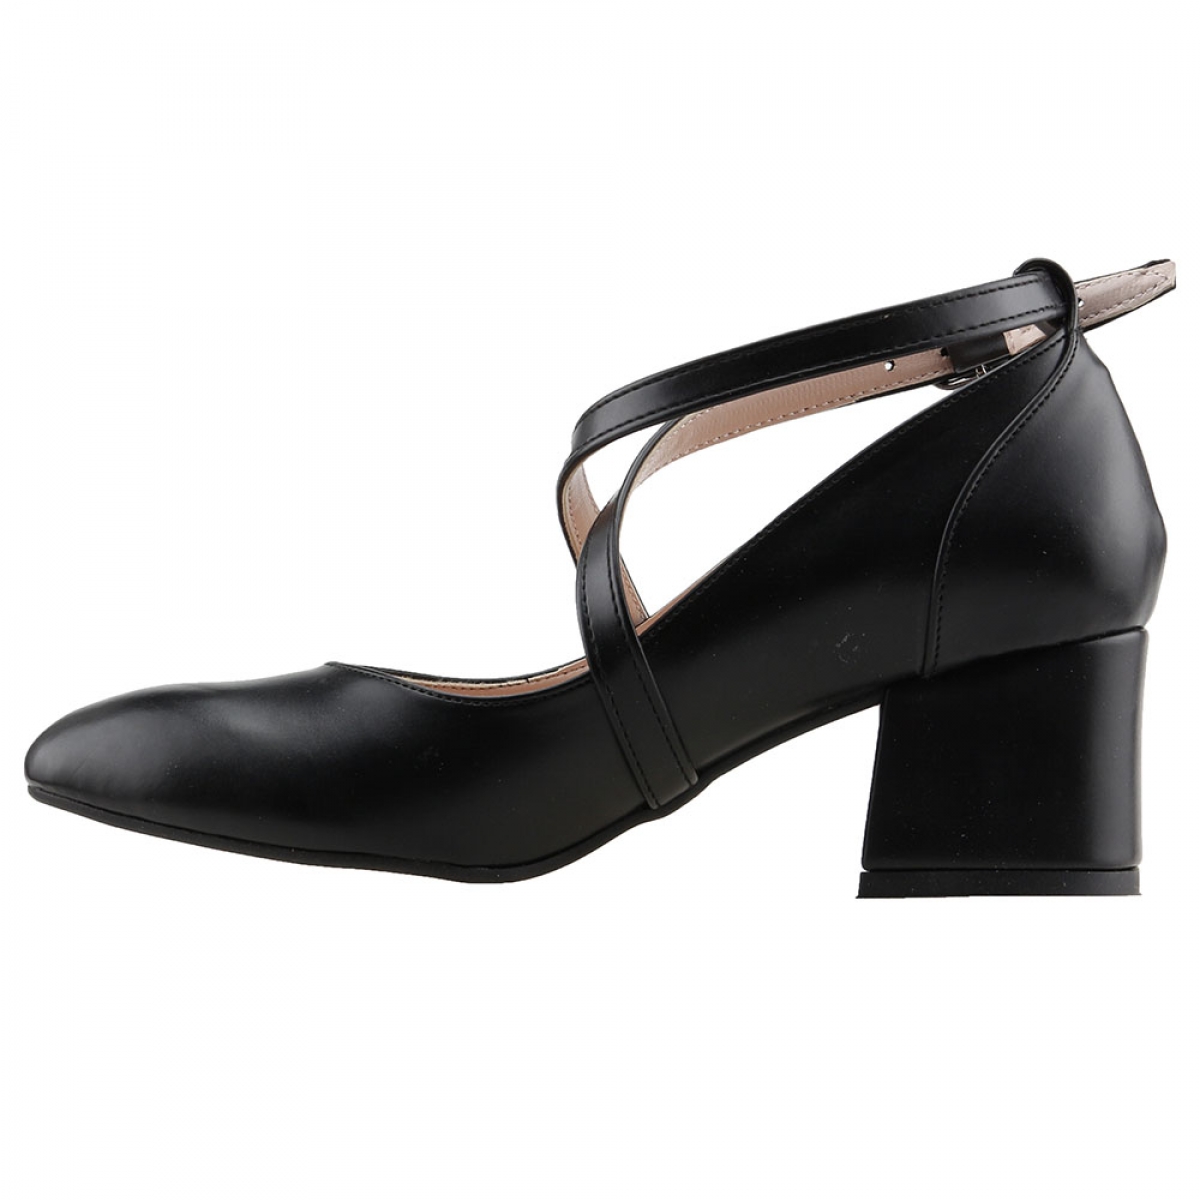 Flo 544-1121 Cilt 5 Cm Topuk Bayan Sandalet Ayakkabı Siyah. 2